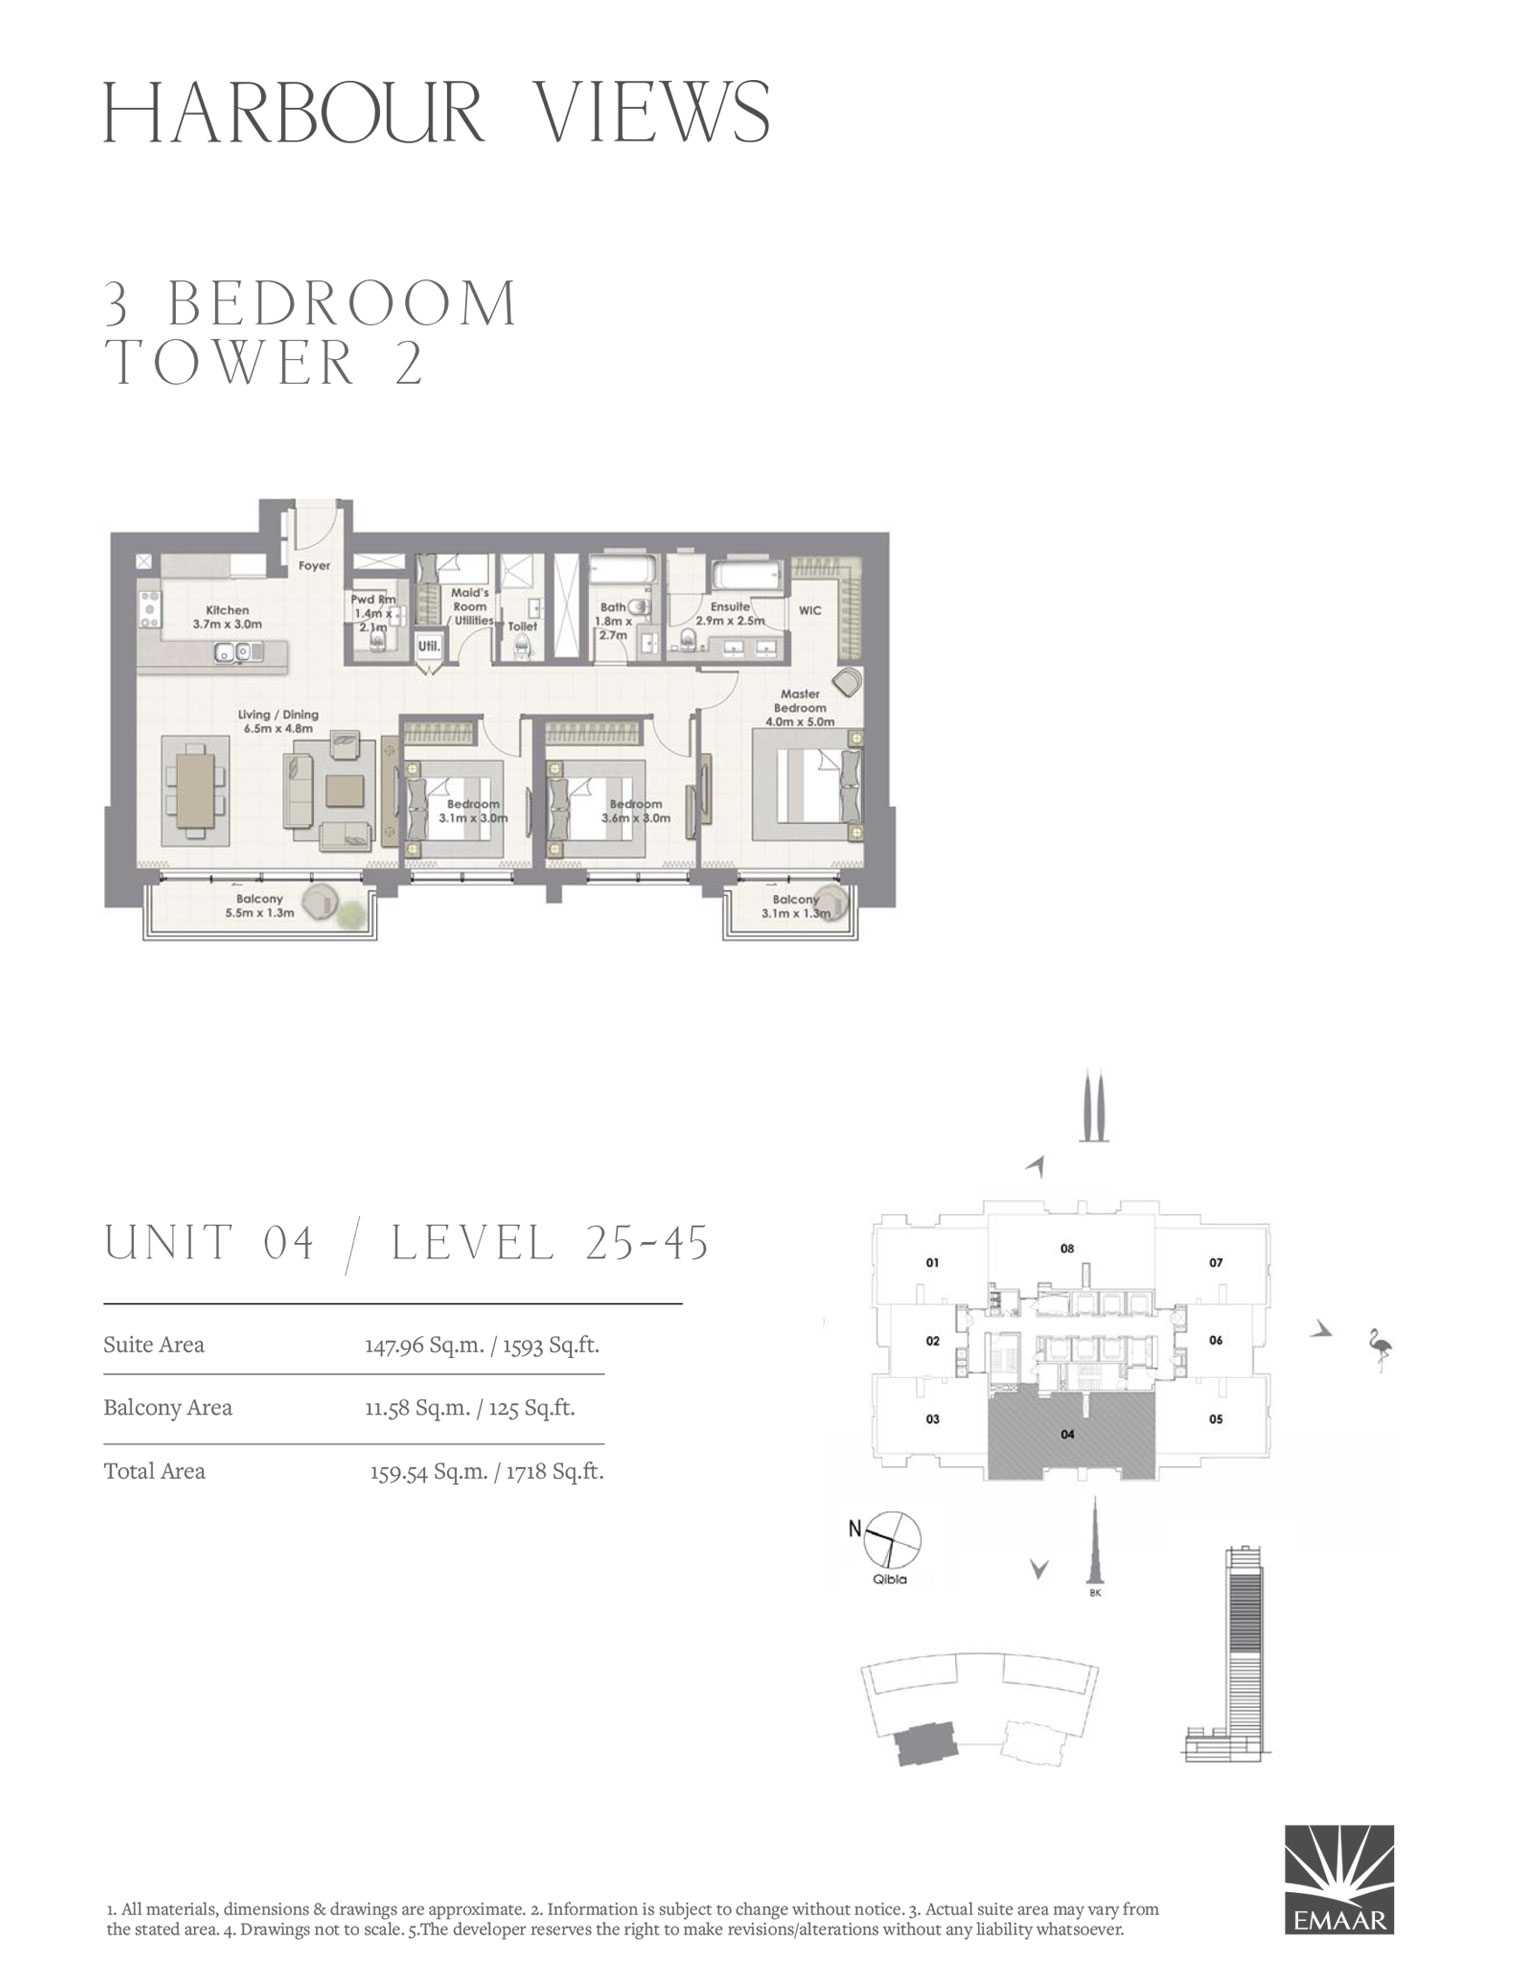 3 BEDROOM 1